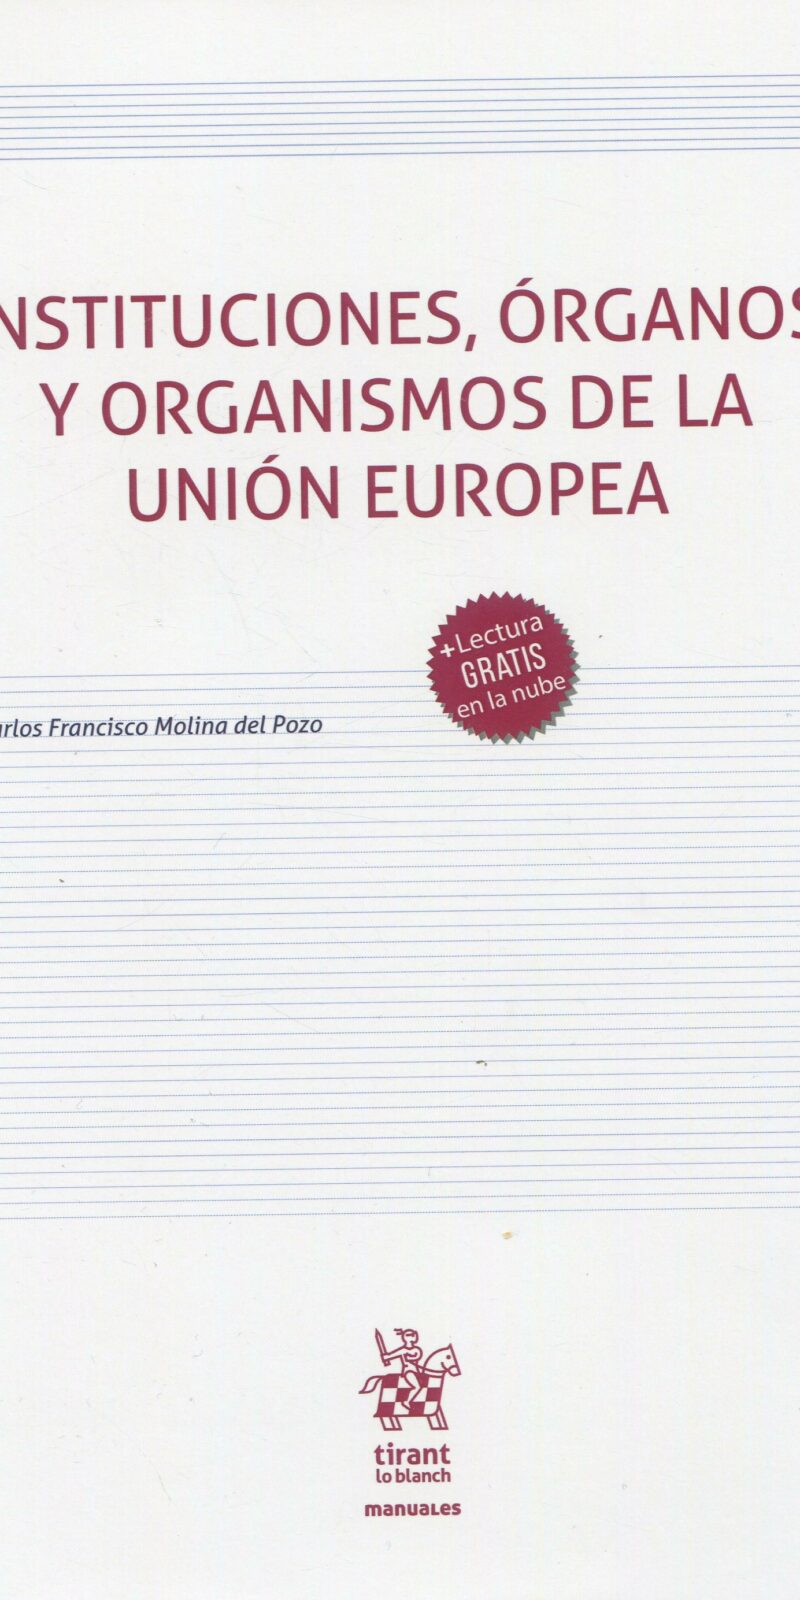 Instituciones, Órganos y Organismos de la Unión Europea 9788411132831